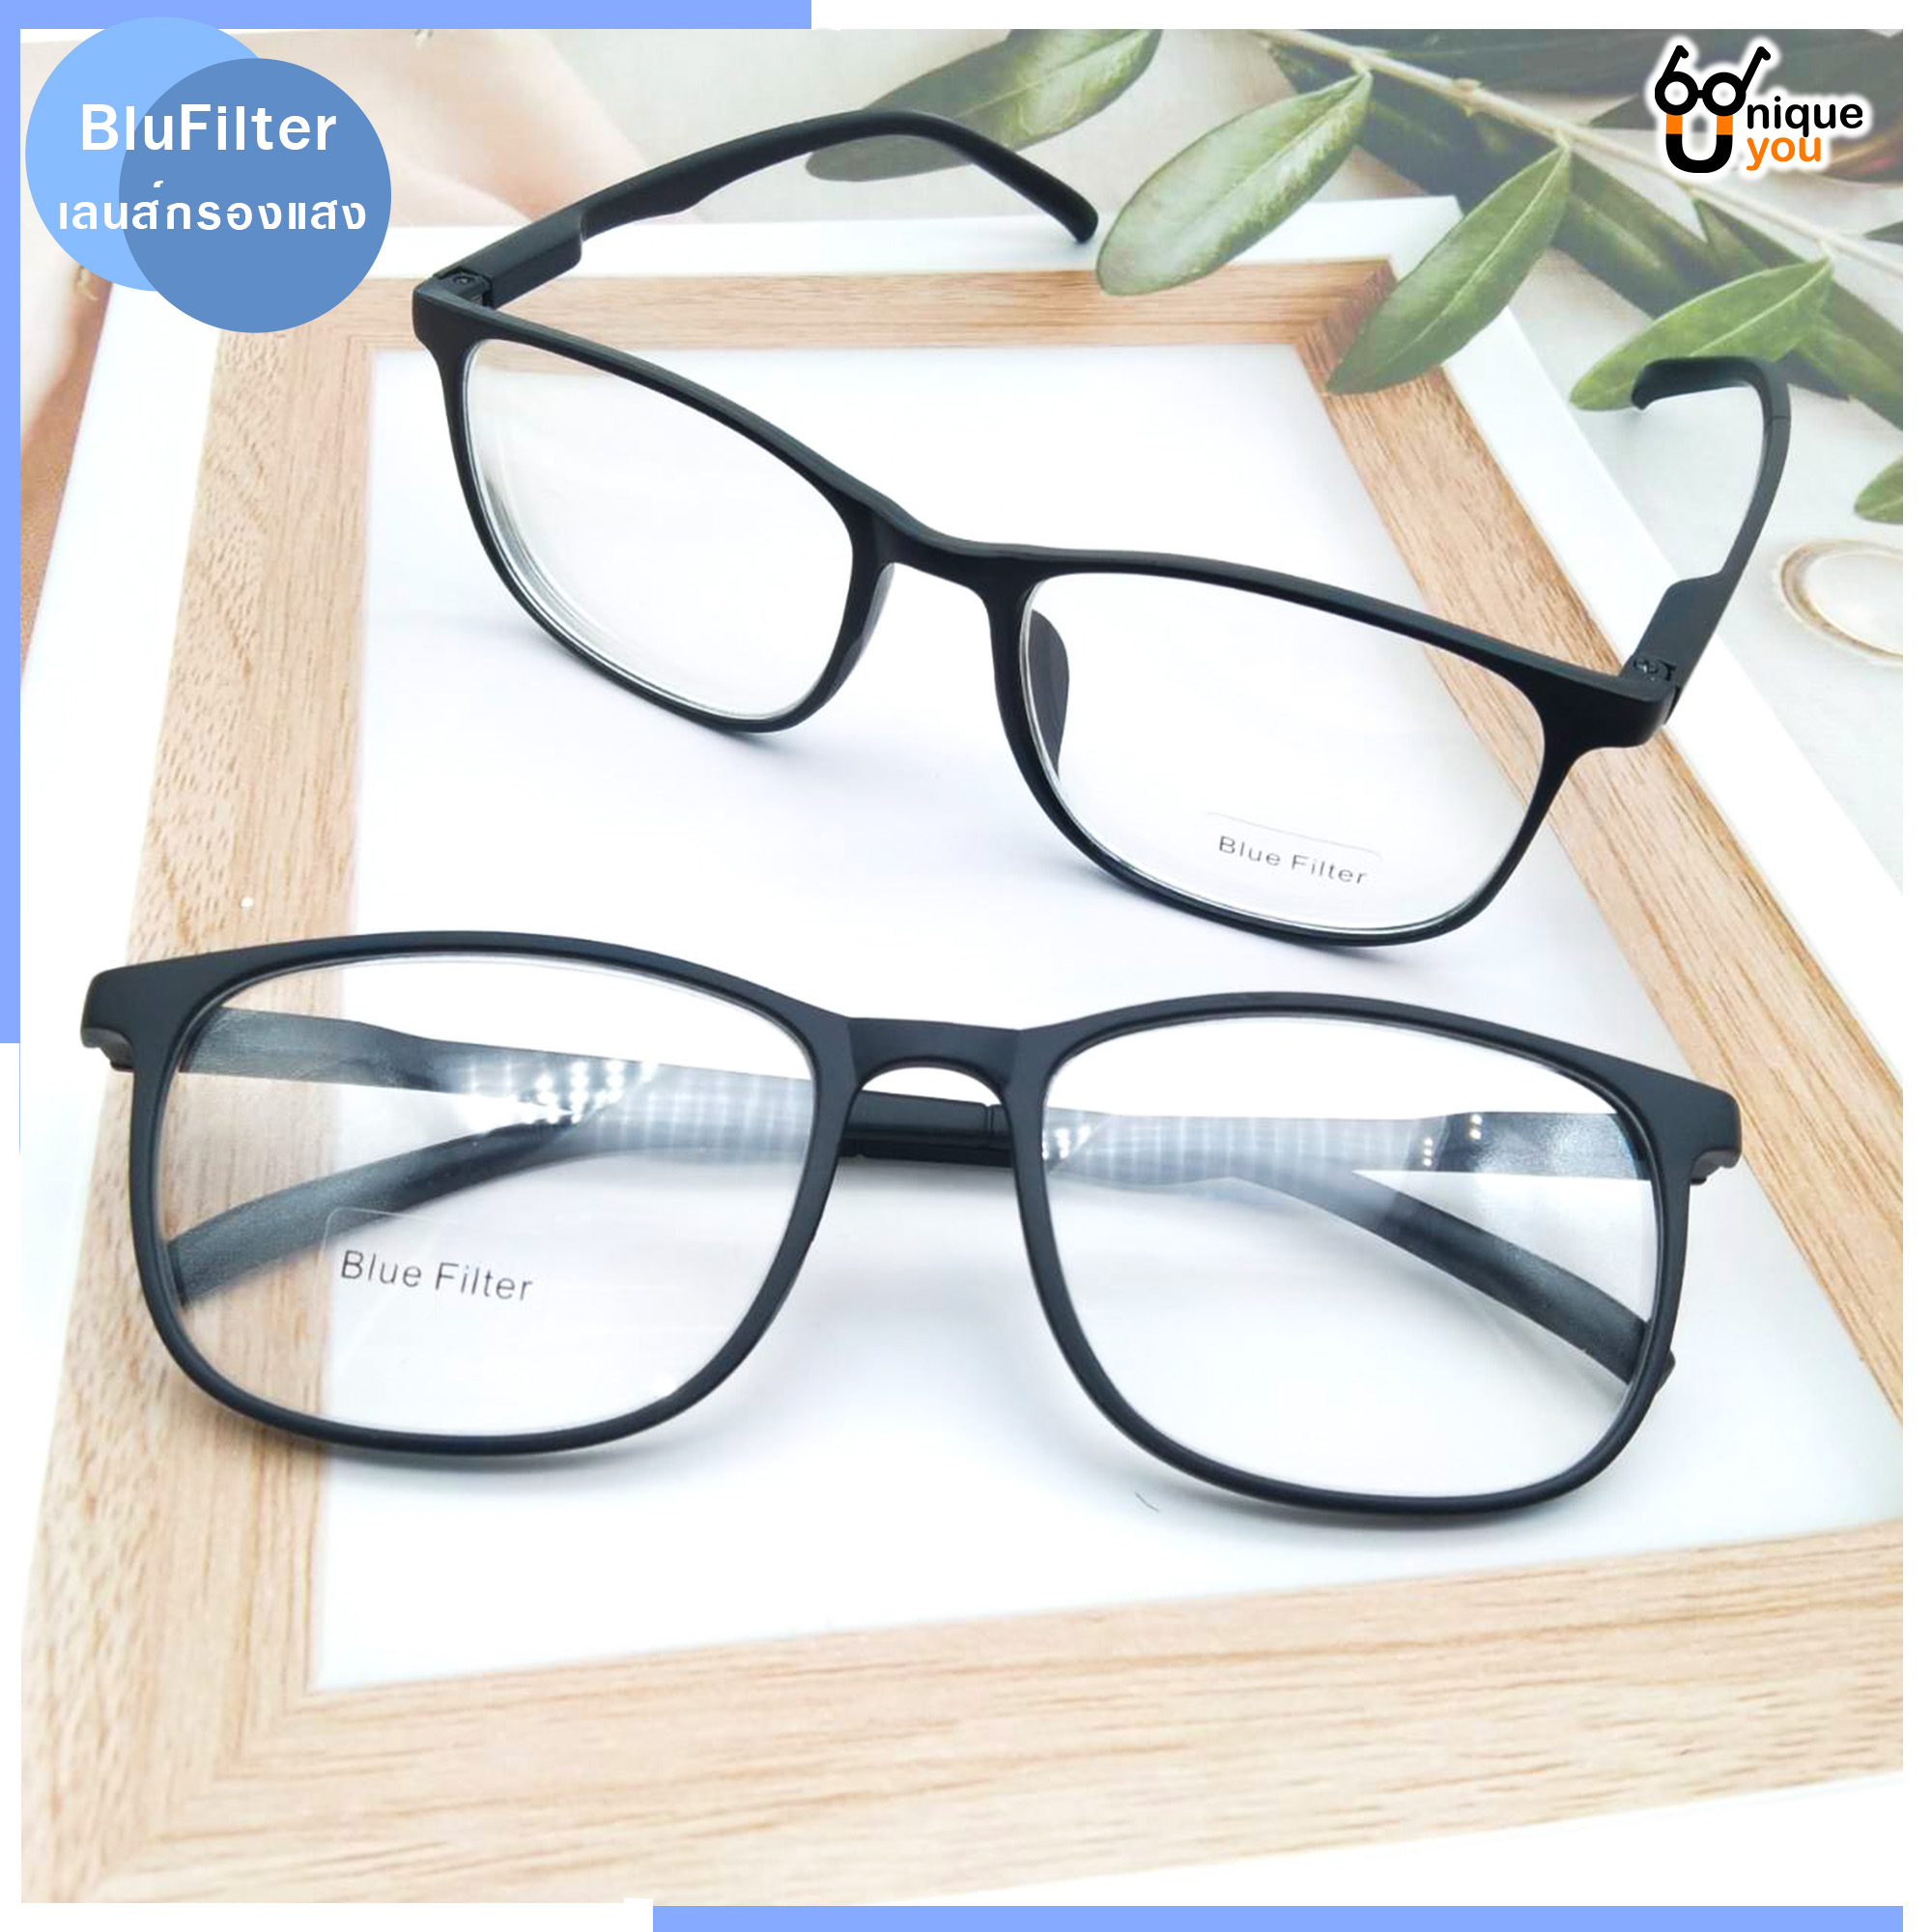 มุมมองเพิ่มเติมของสินค้า Uniq แว่นสายตาสั้น แว่นสายตายาว เลนส์กรองแสงสีฟ้า Blue Filter แว่นตาขาสปริง แว่นสายตา แว่นตาเลนส์กรองแสง แว่นกรองแสง